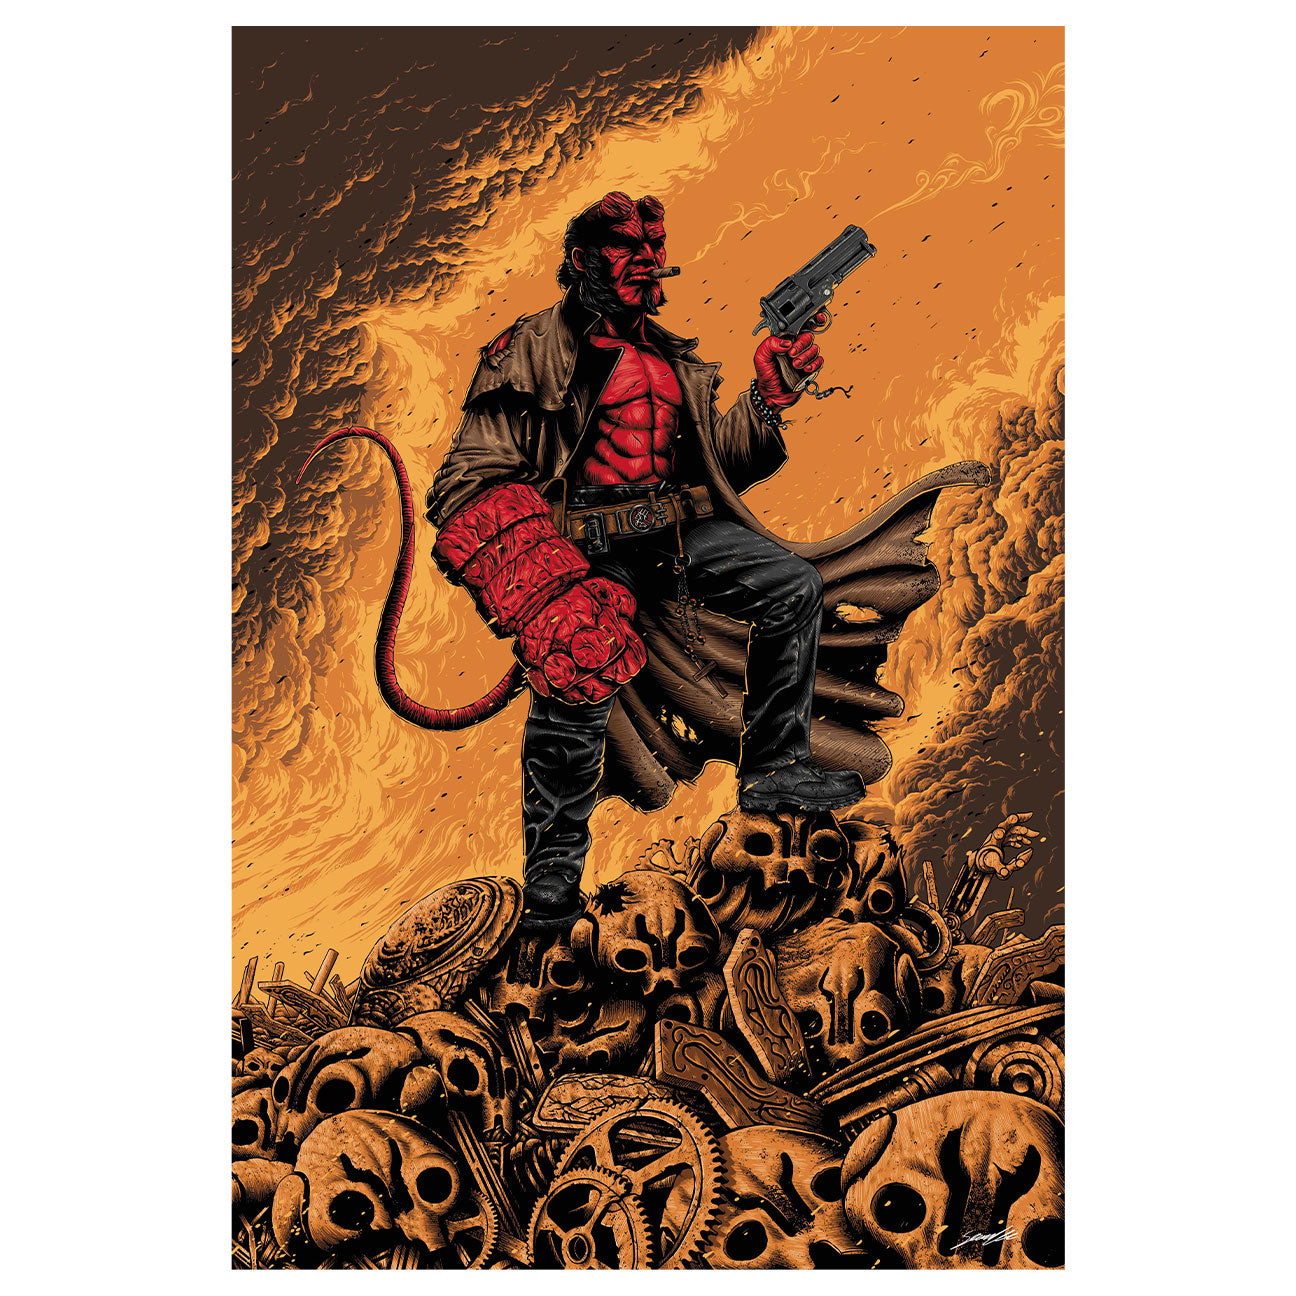 Hellboy Limited Edition Art Print